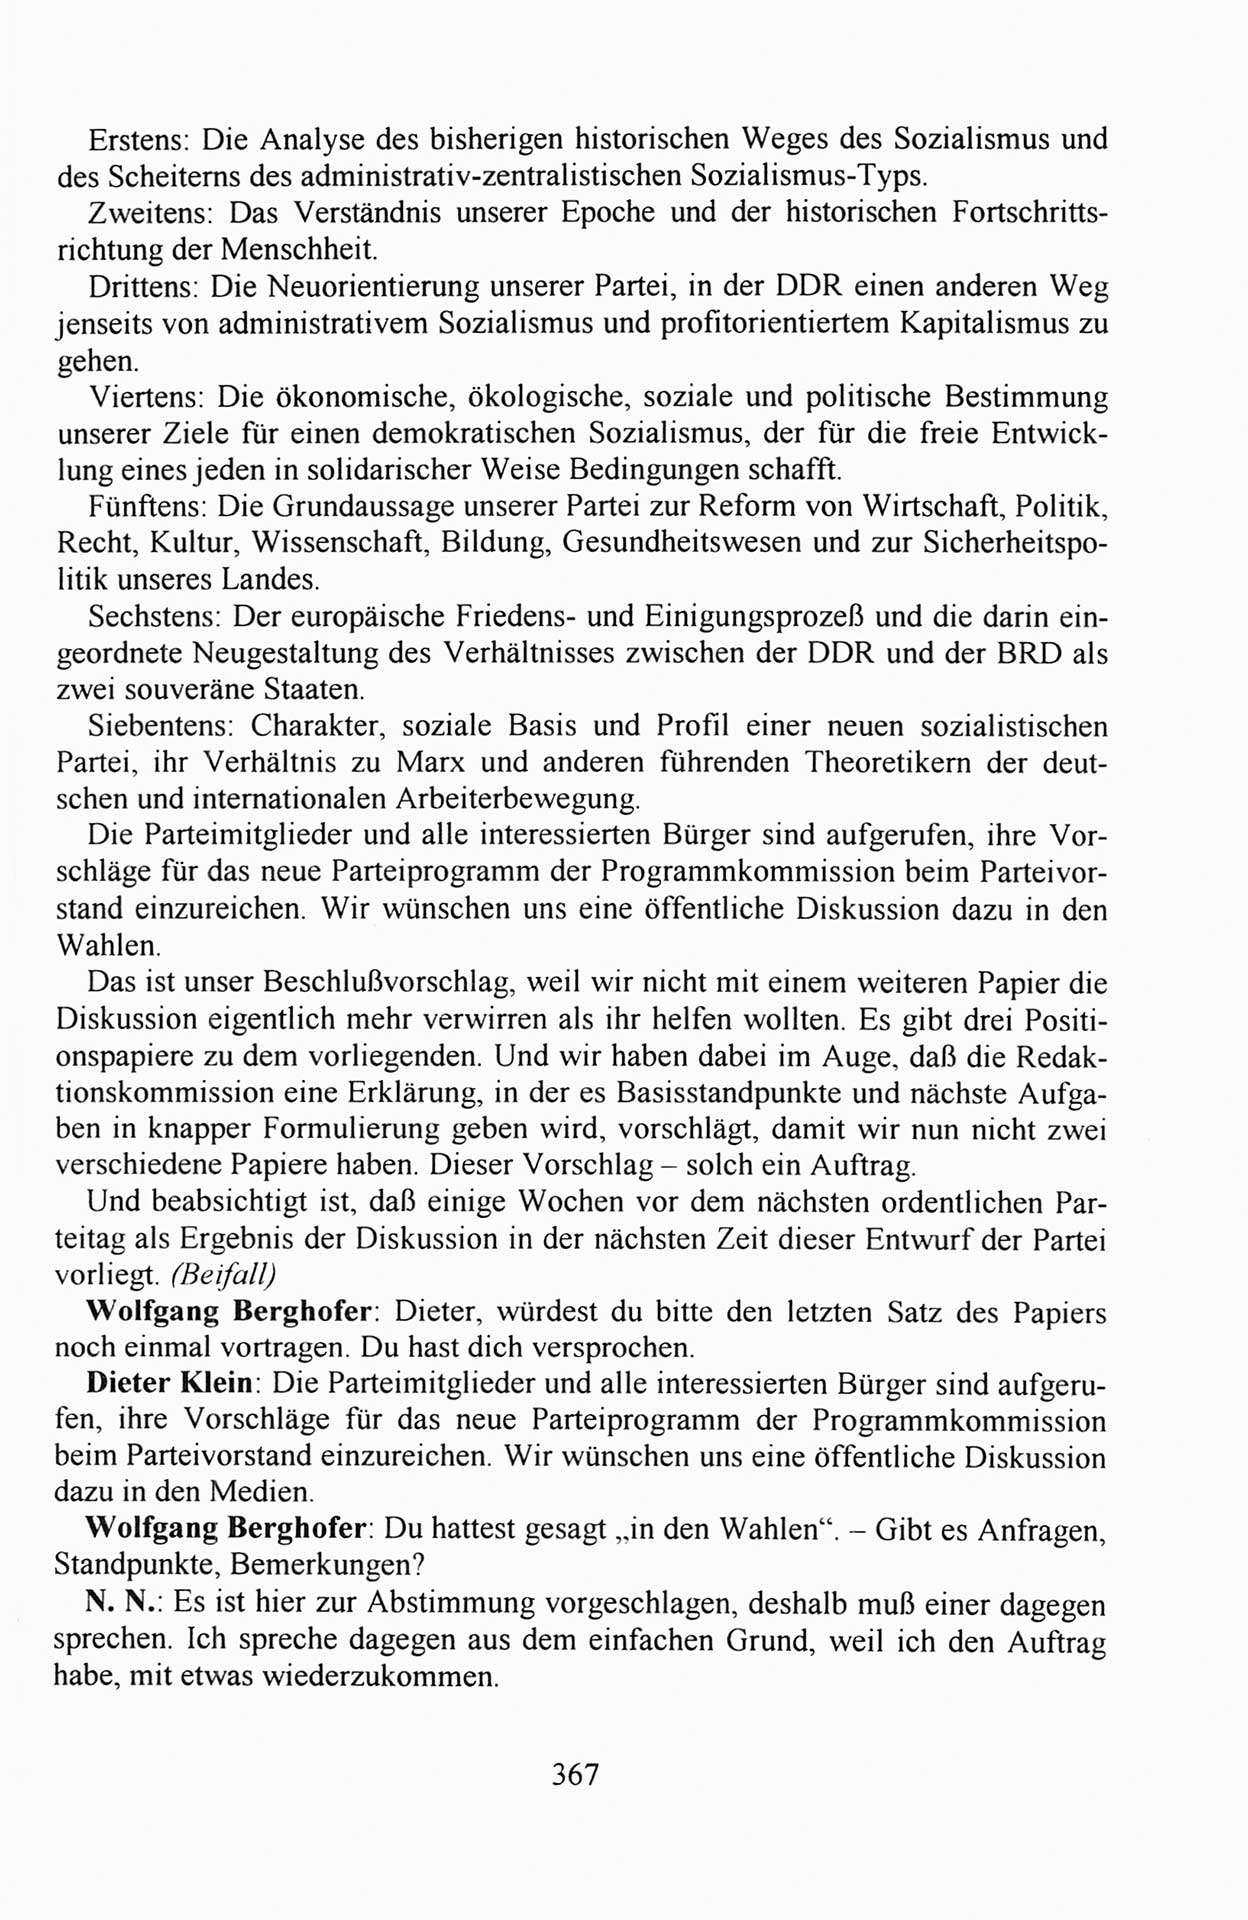 Außerordentlicher Parteitag der SED/PDS (Sozialistische Einheitspartei Deutschlands/Partei des Demokratischen Sozialismus) [Deutsche Demokratische Republik (DDR)], Protokoll der Beratungen am 8./9. und 16./17.12.1989 in Berlin 1989, Seite 367 (PT. SED/PDS DDR Prot. 1989, S. 367)